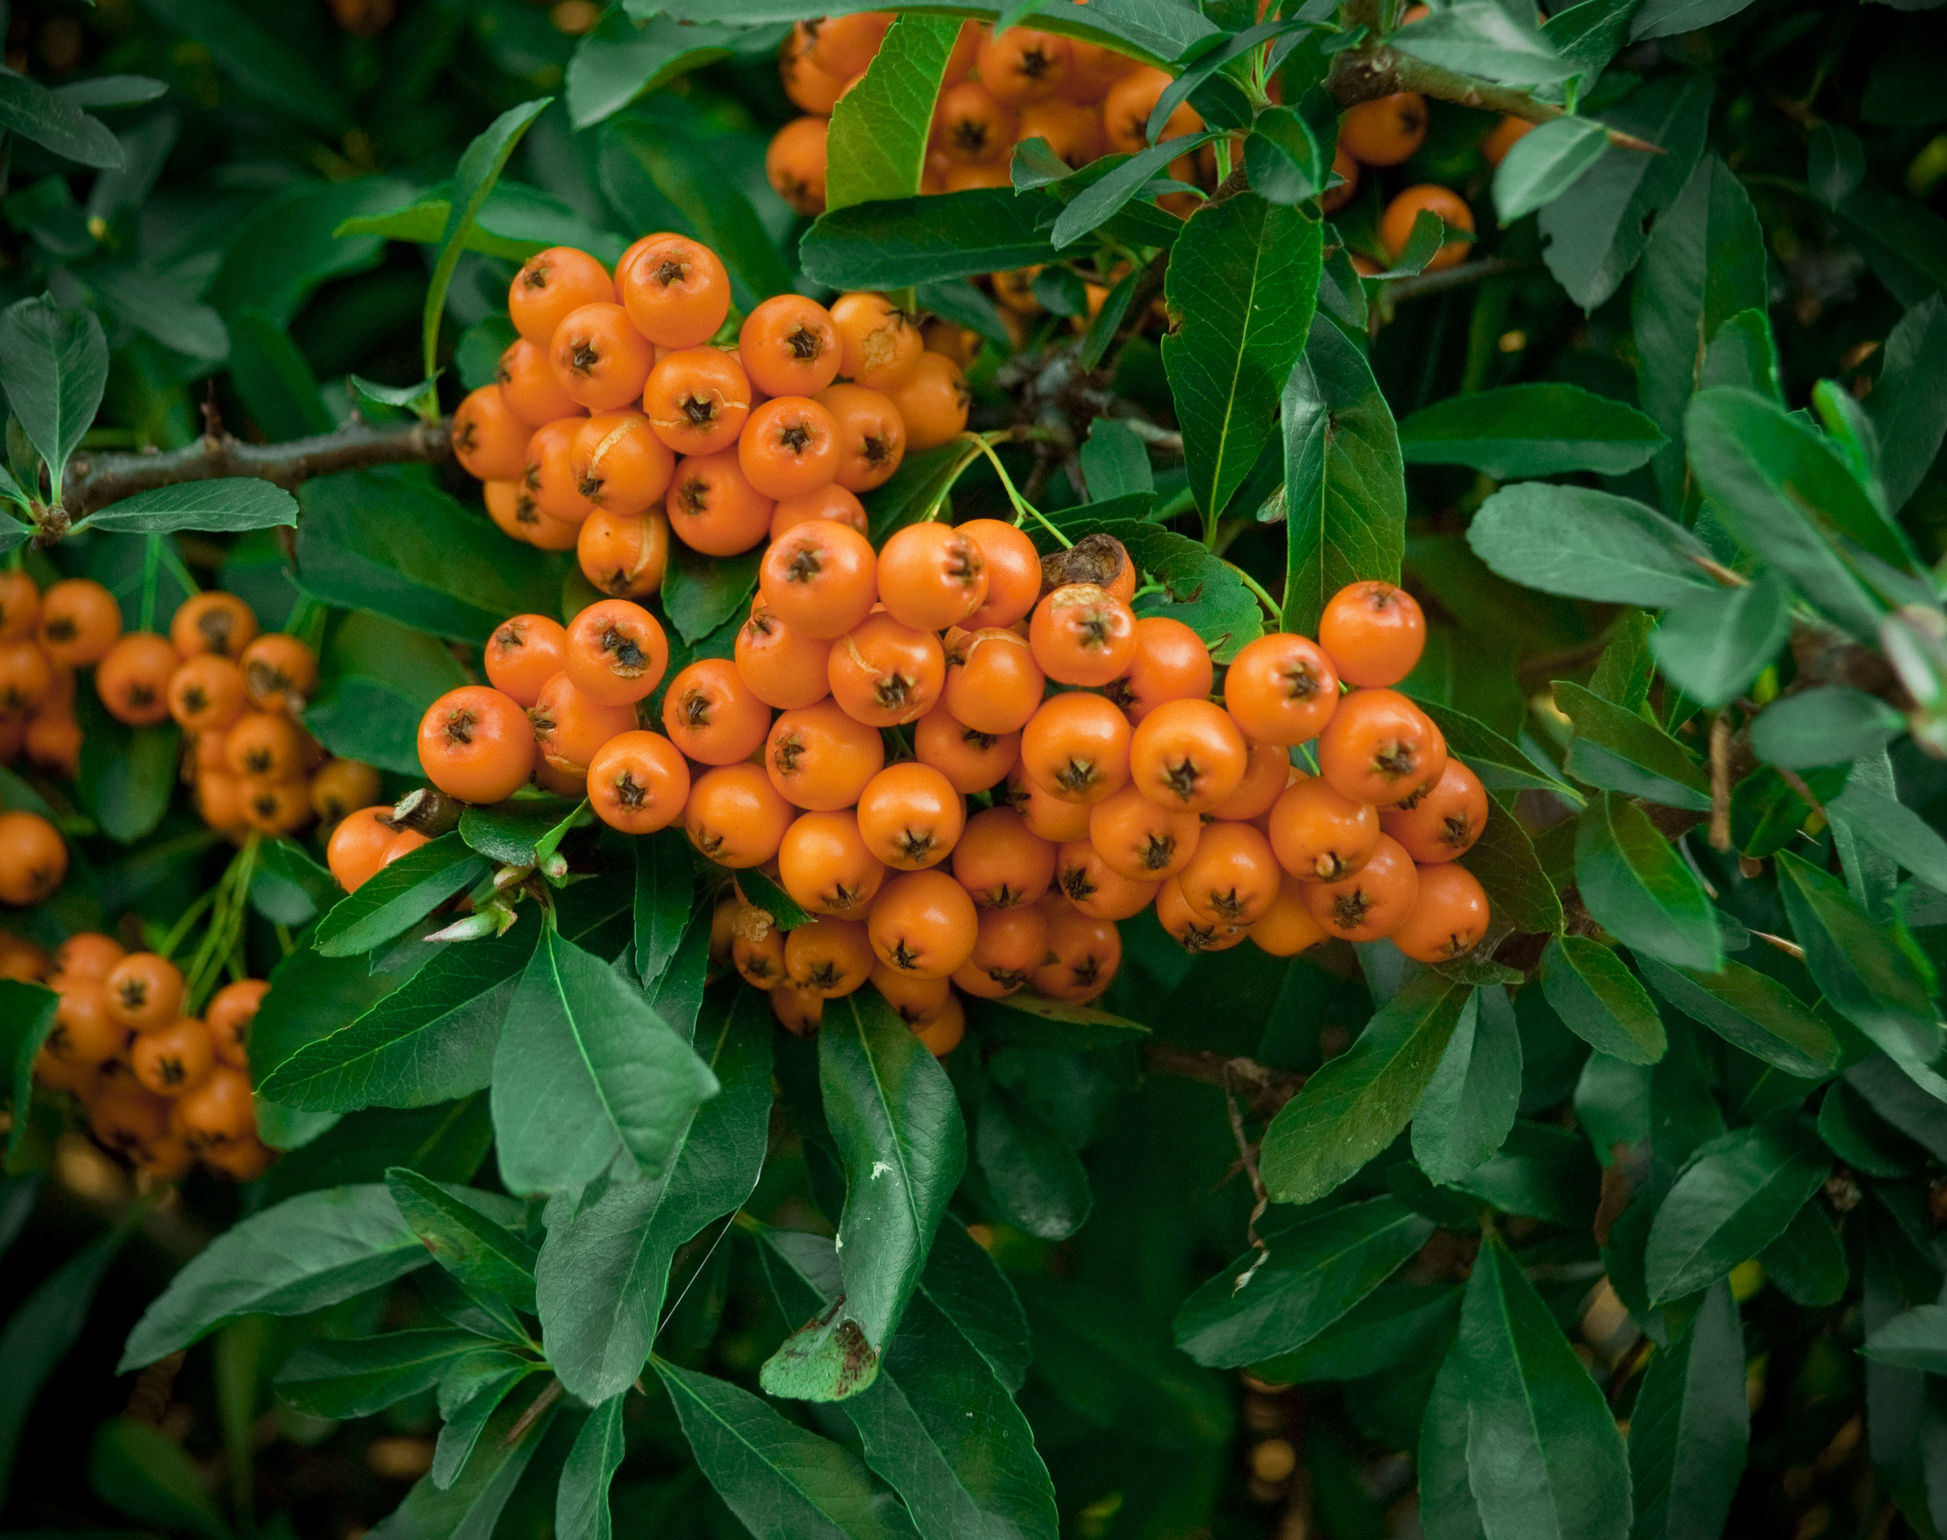 Pyracantha berries brighten the scene (Thinkstock/PA)